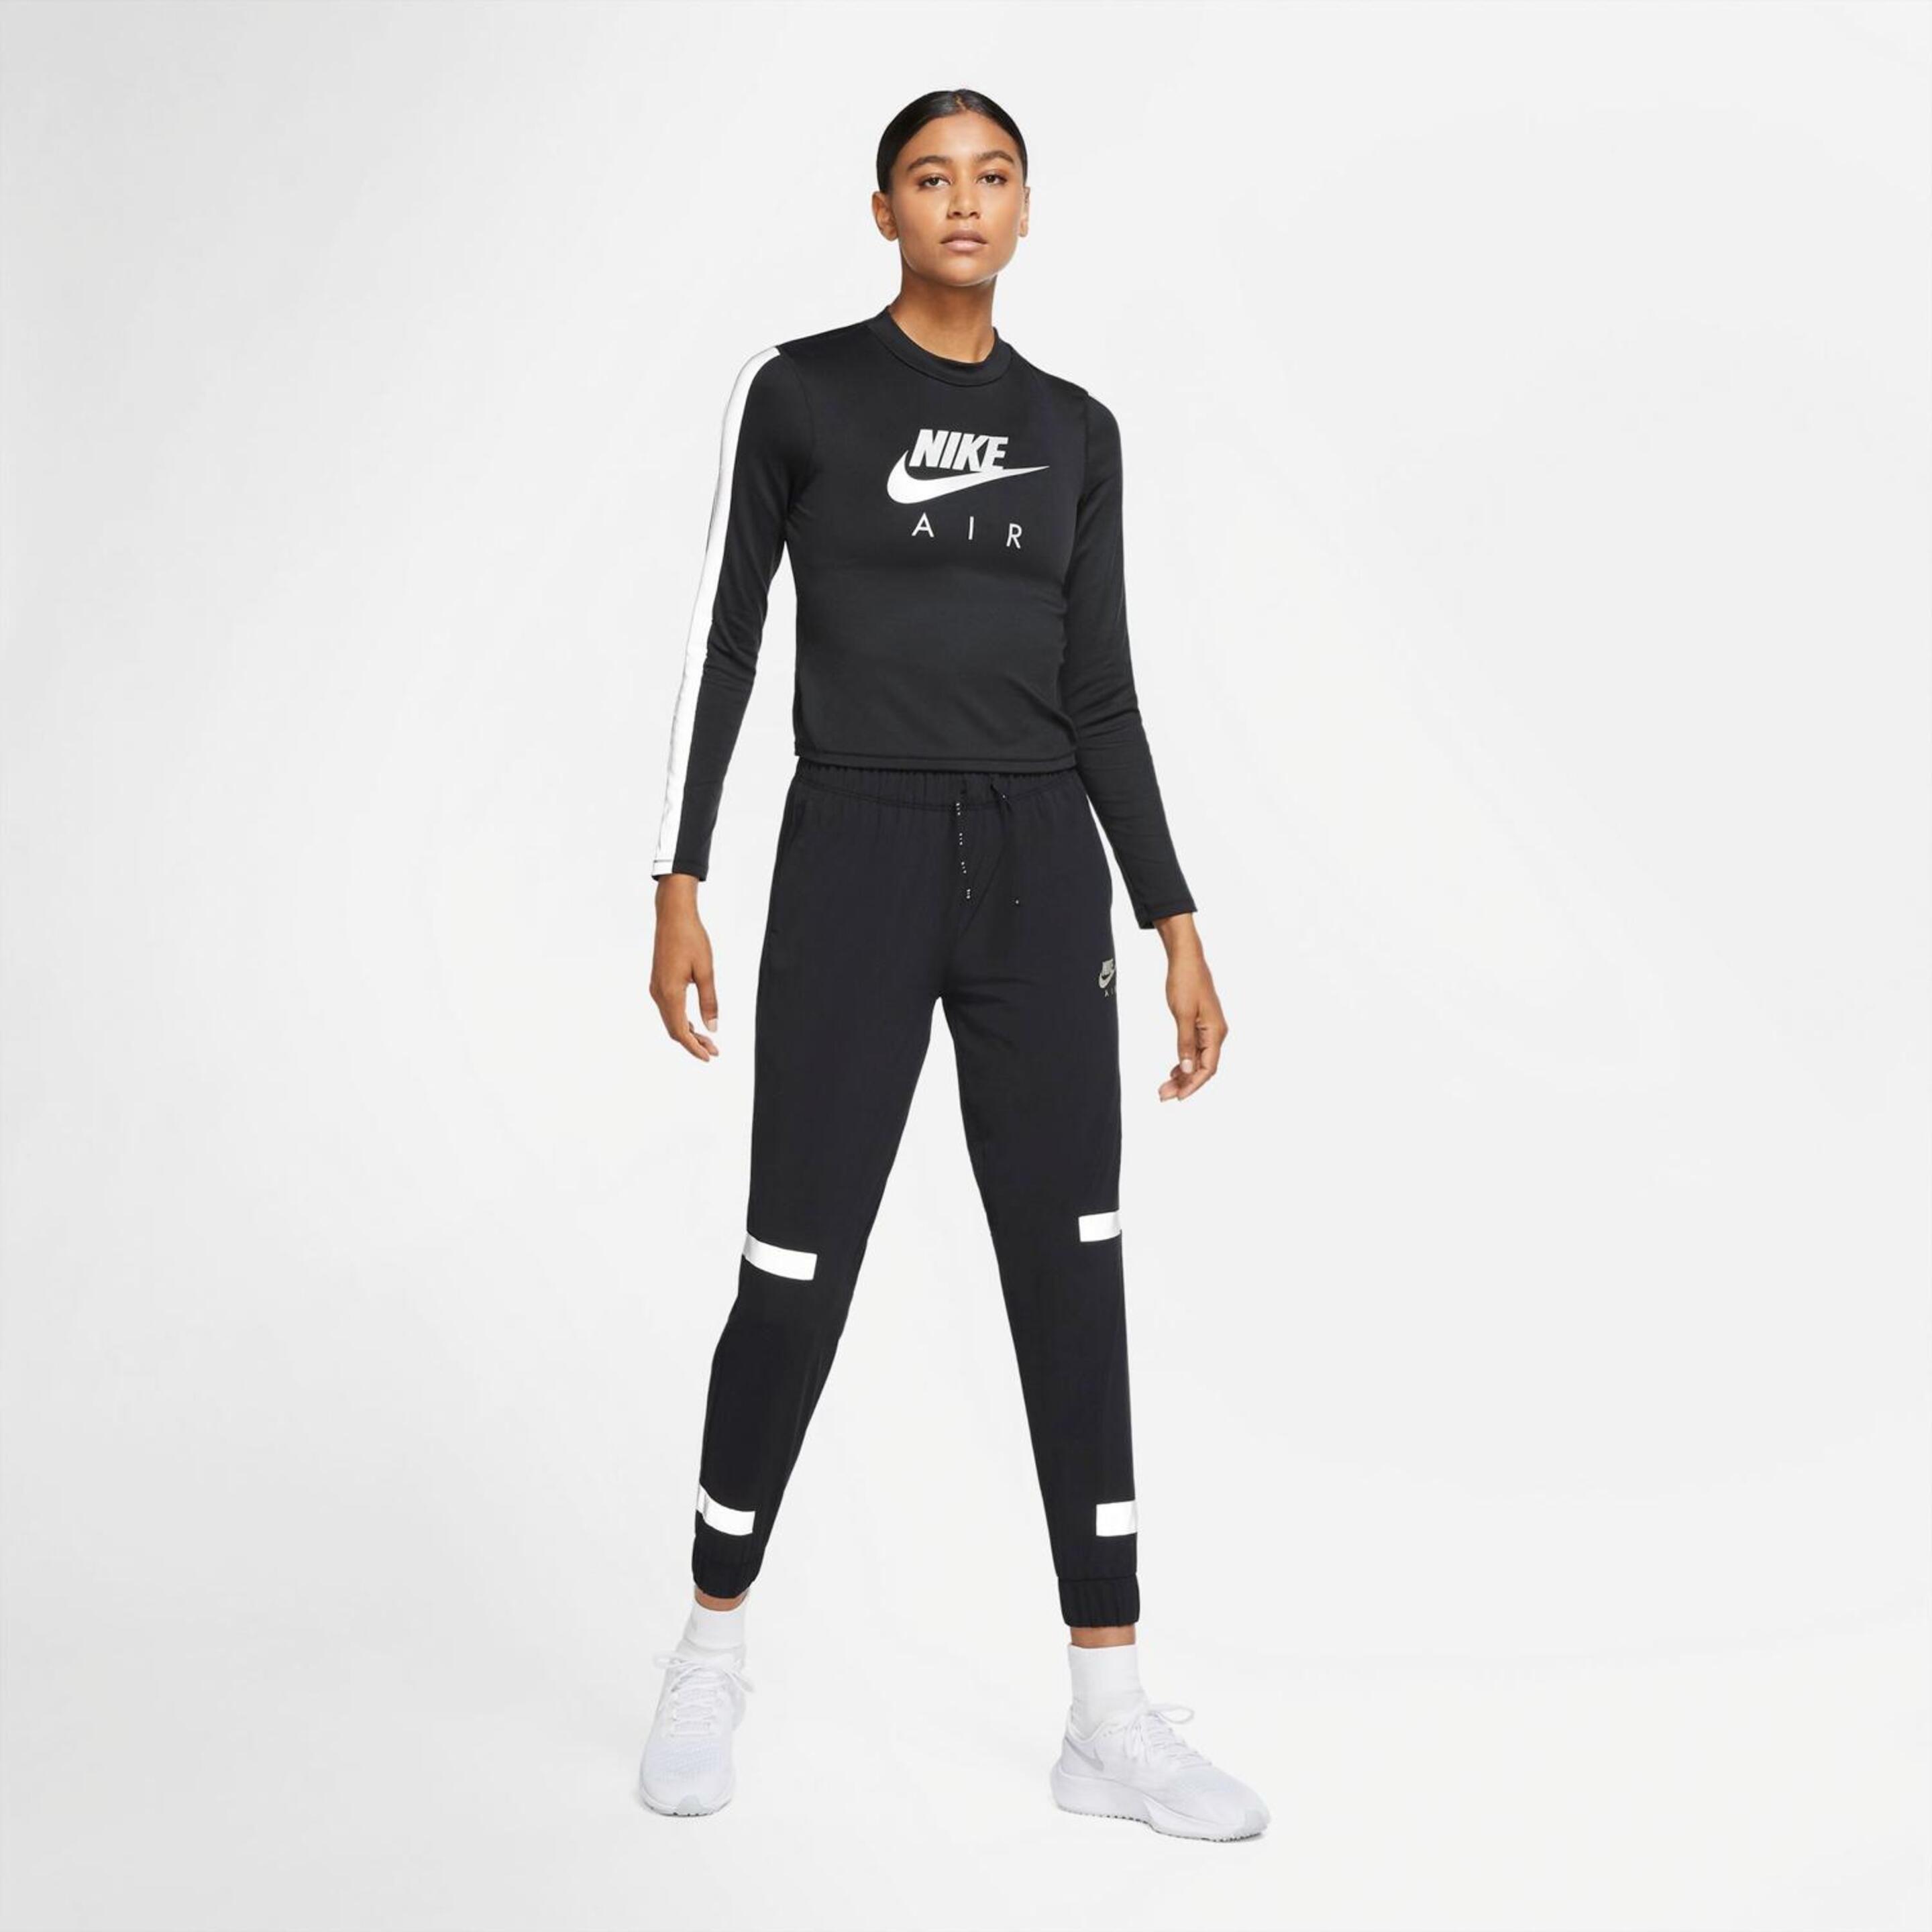 Camisola Nike Air Top